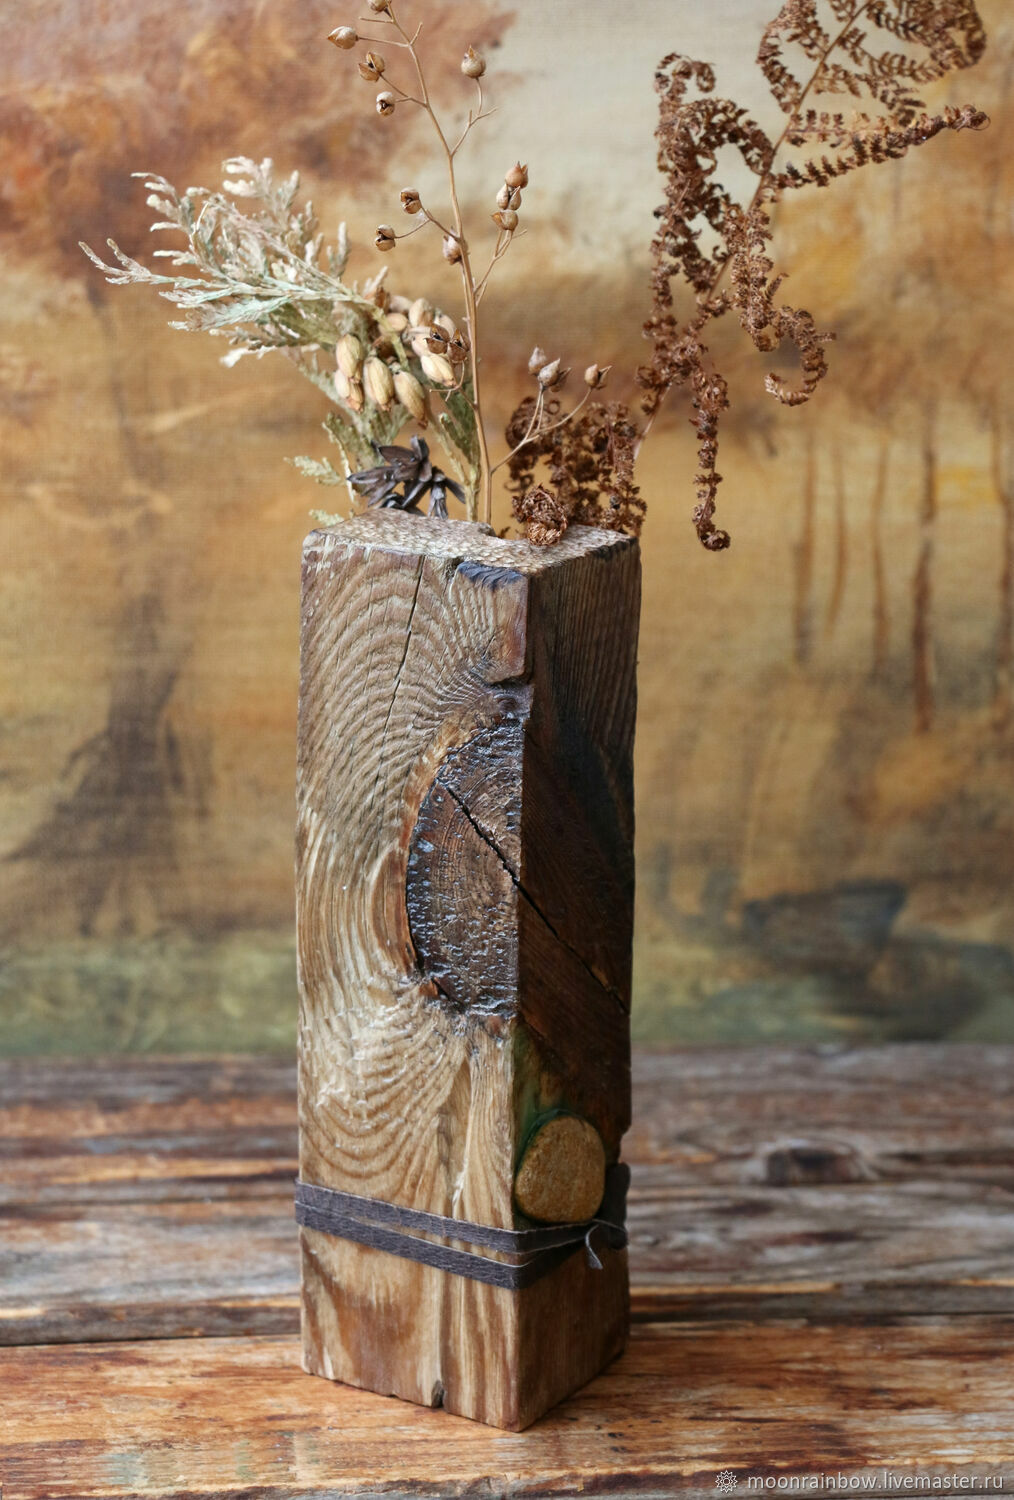 Декорирование цветочного горшка ракушками: Персональные записи в журнале Ярмарки Мастеров